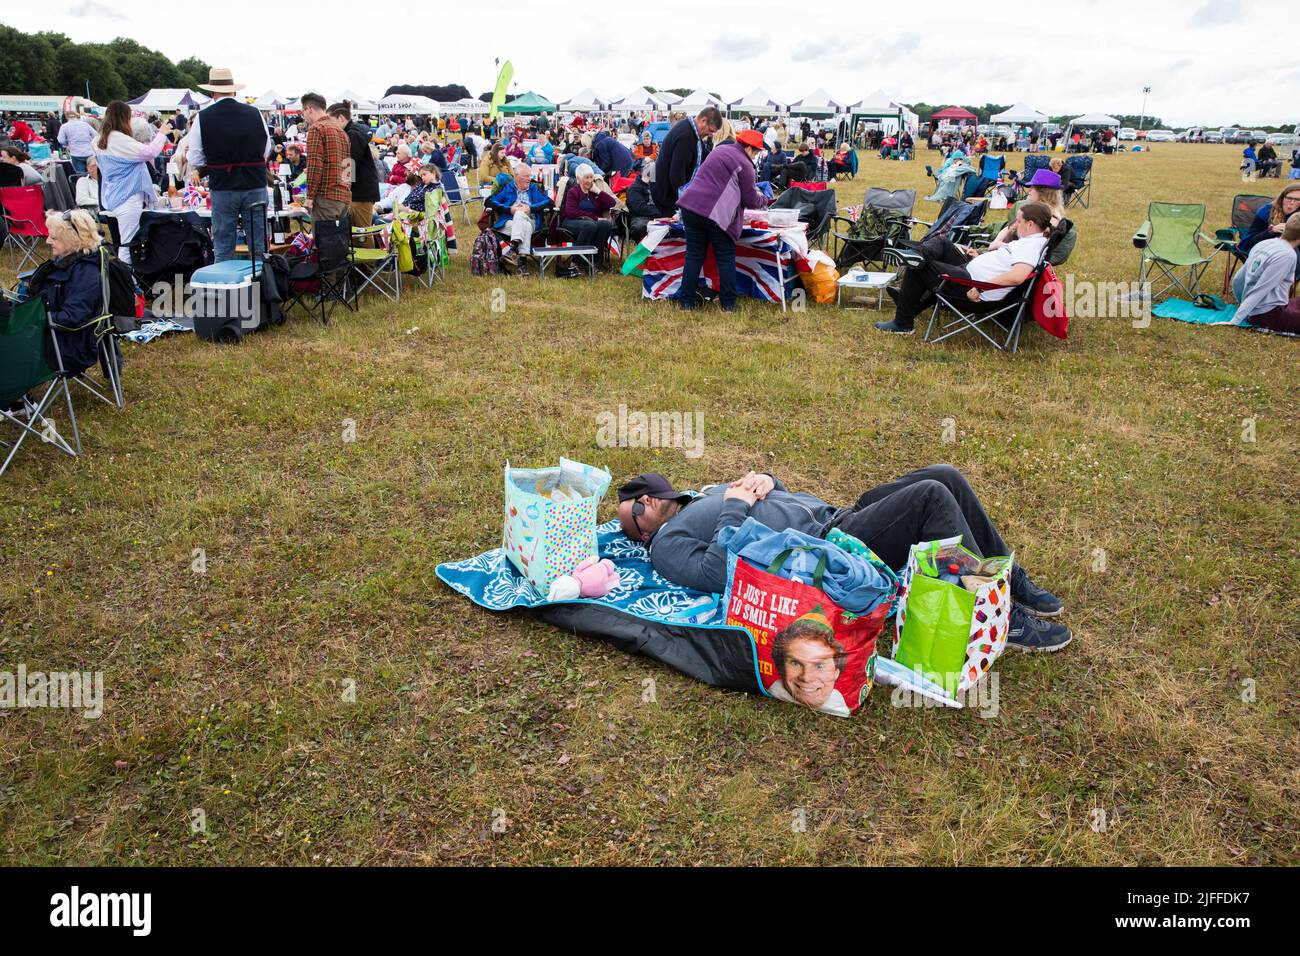 Woodstock, Oxfordshire, Großbritannien. 2.. Juli 2022. Mann liegt schlafend, umgeben von Einkaufstaschen. Einer mit Elf, der sagt: „Ich lächle einfach gerne“. Battle Prom Picknick-Konzerte. Blenheim Palace. Vereinigtes Königreich. Quelle: Alexander Caminada/Alamy Live News Stockfoto